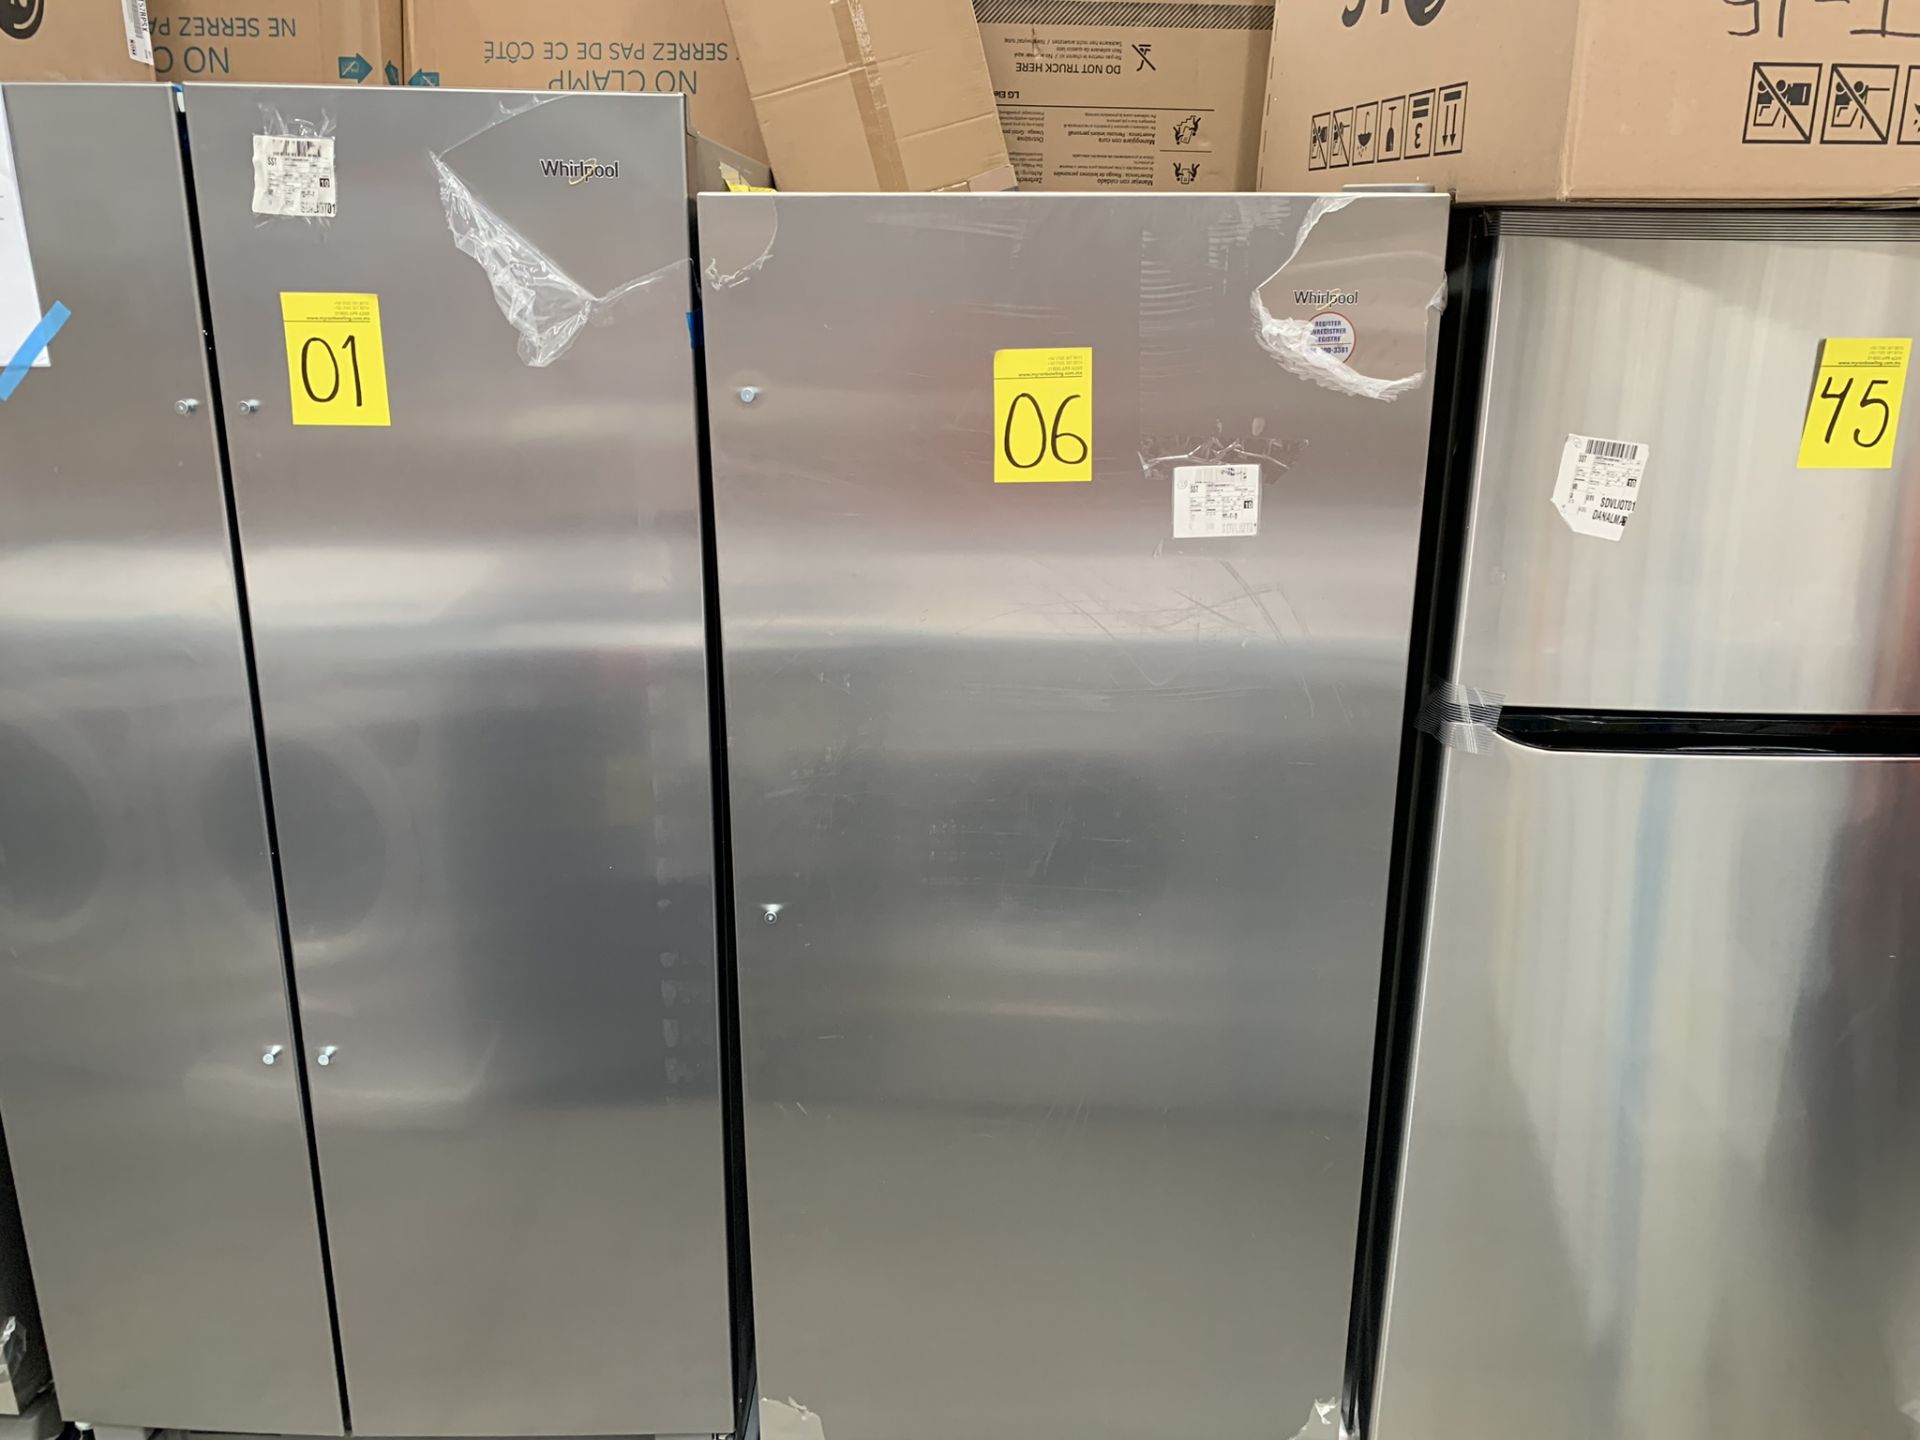 1 Refrigerador Marca Whirlpool, Modelo WSR57R18DM05, No de serie UB1703662 , Color Gris, LB-019111